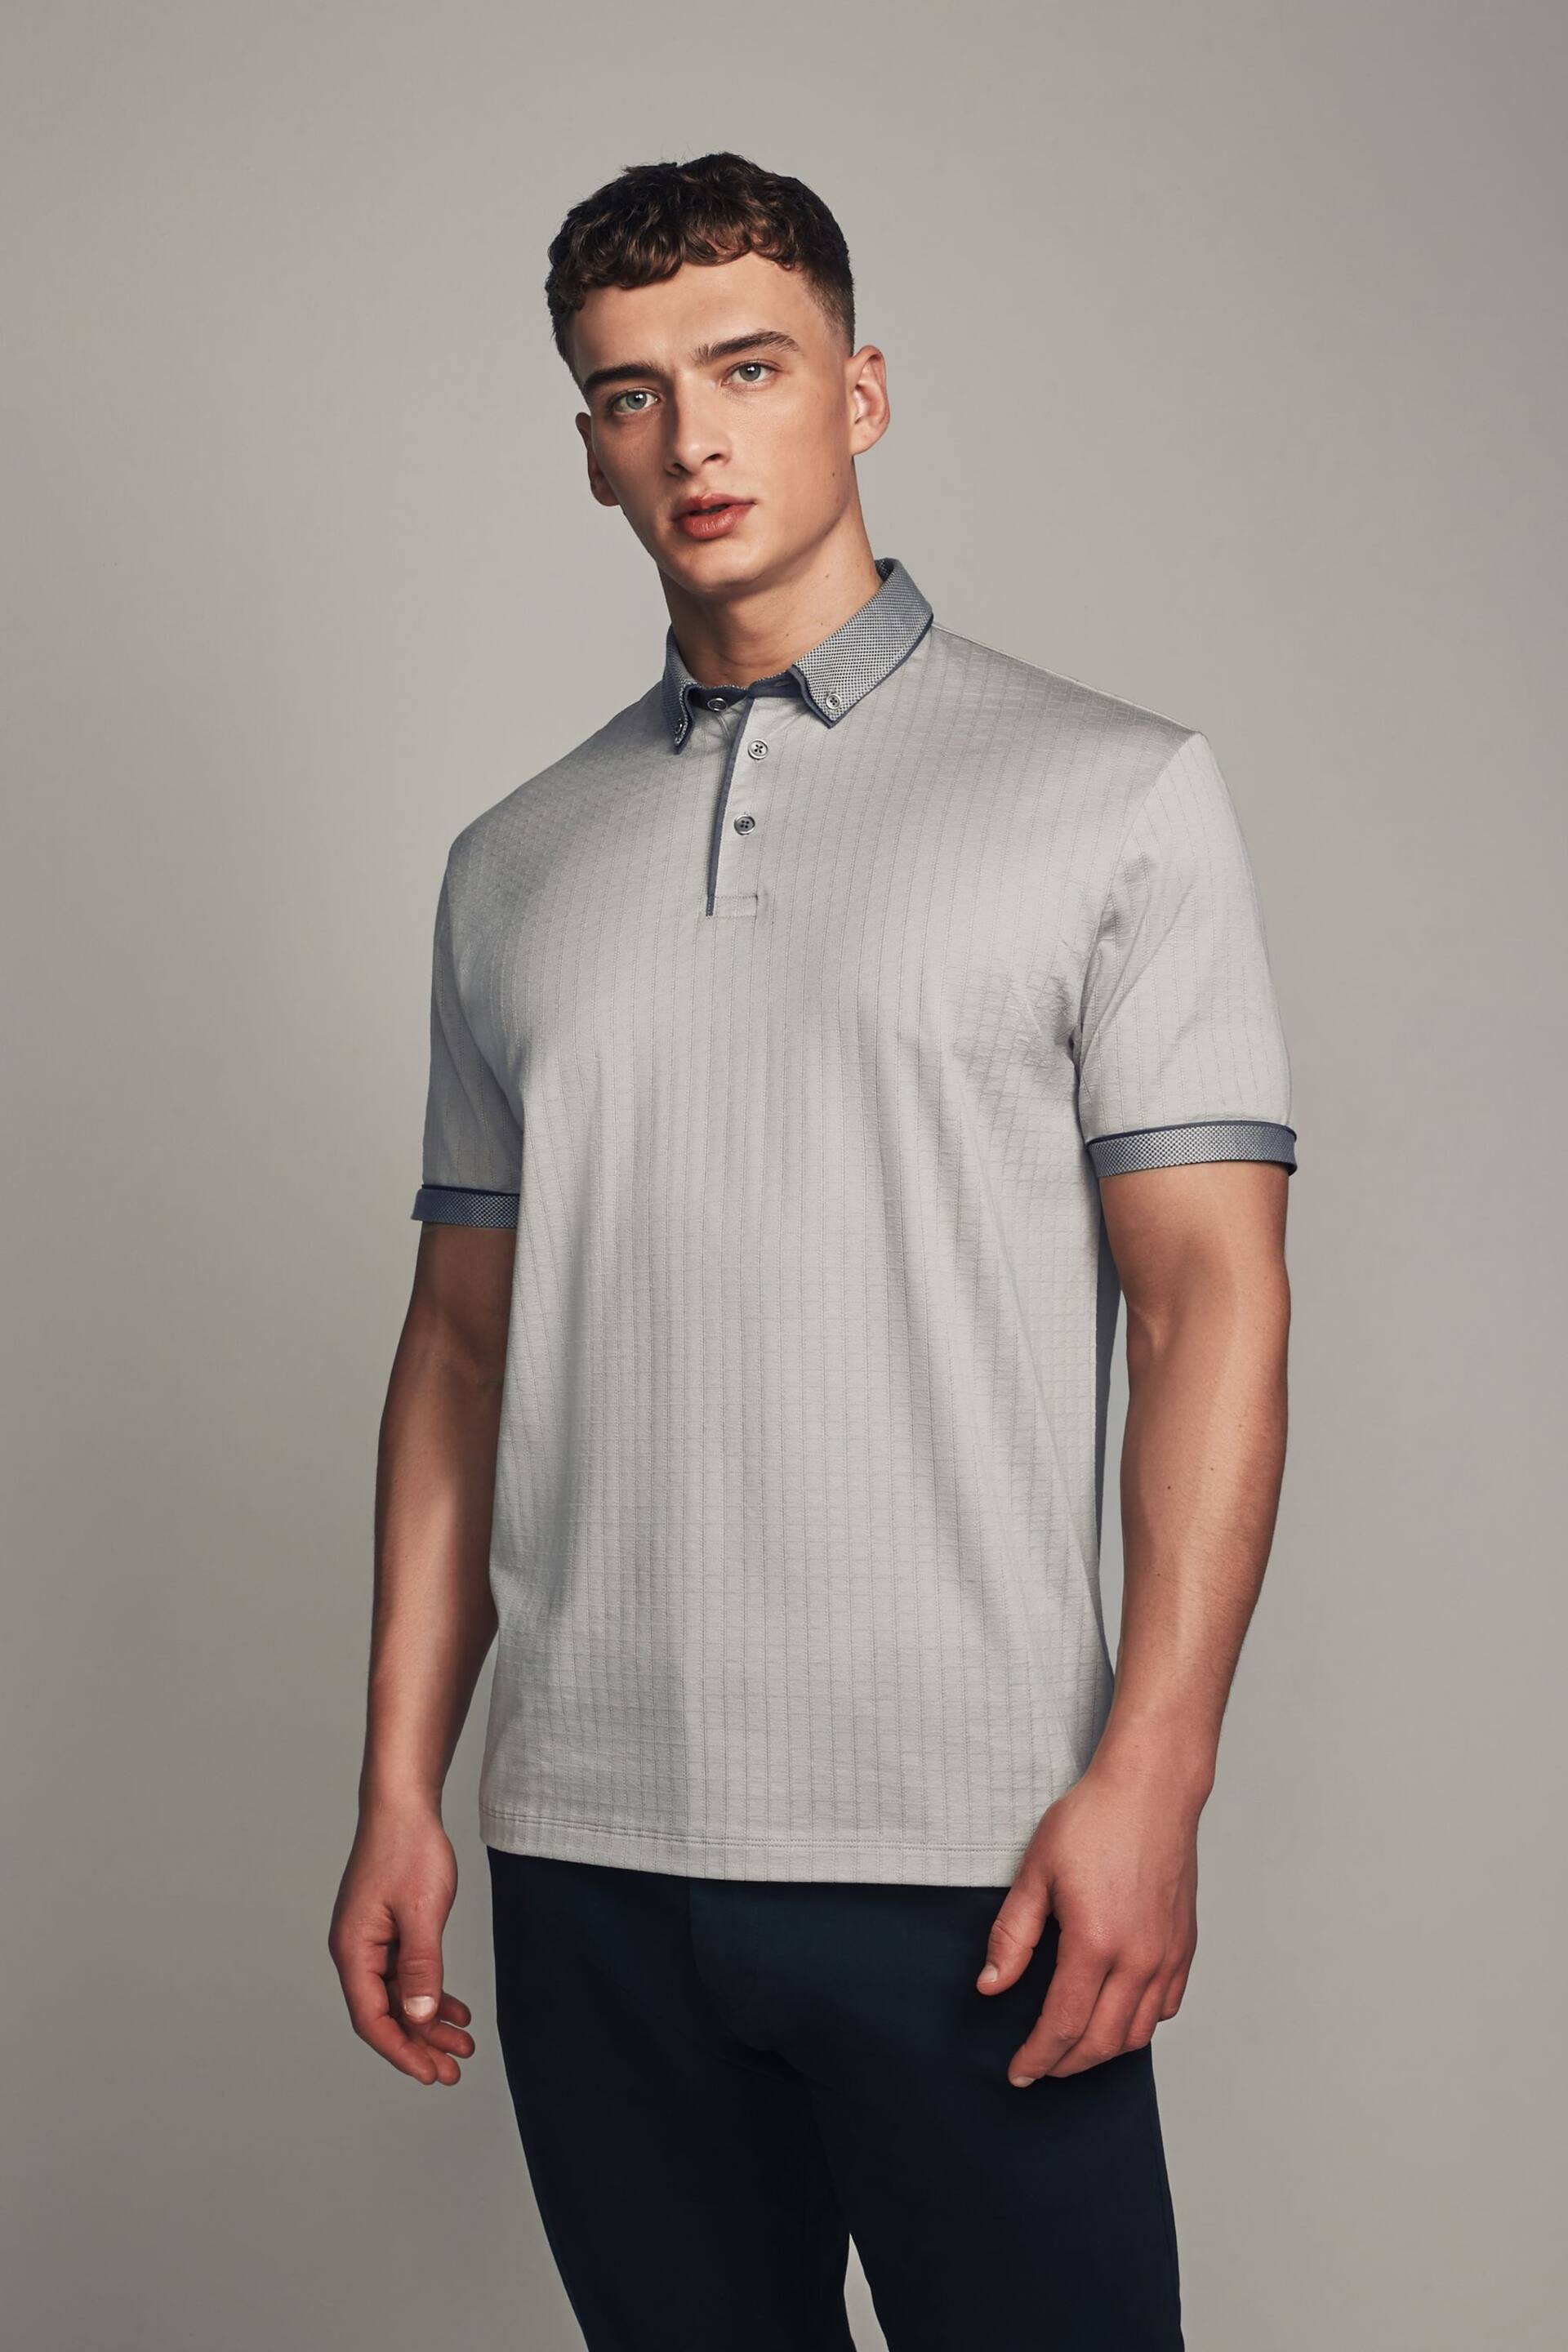 Grey Smart Collar Polo Shirt - Image 4 of 10